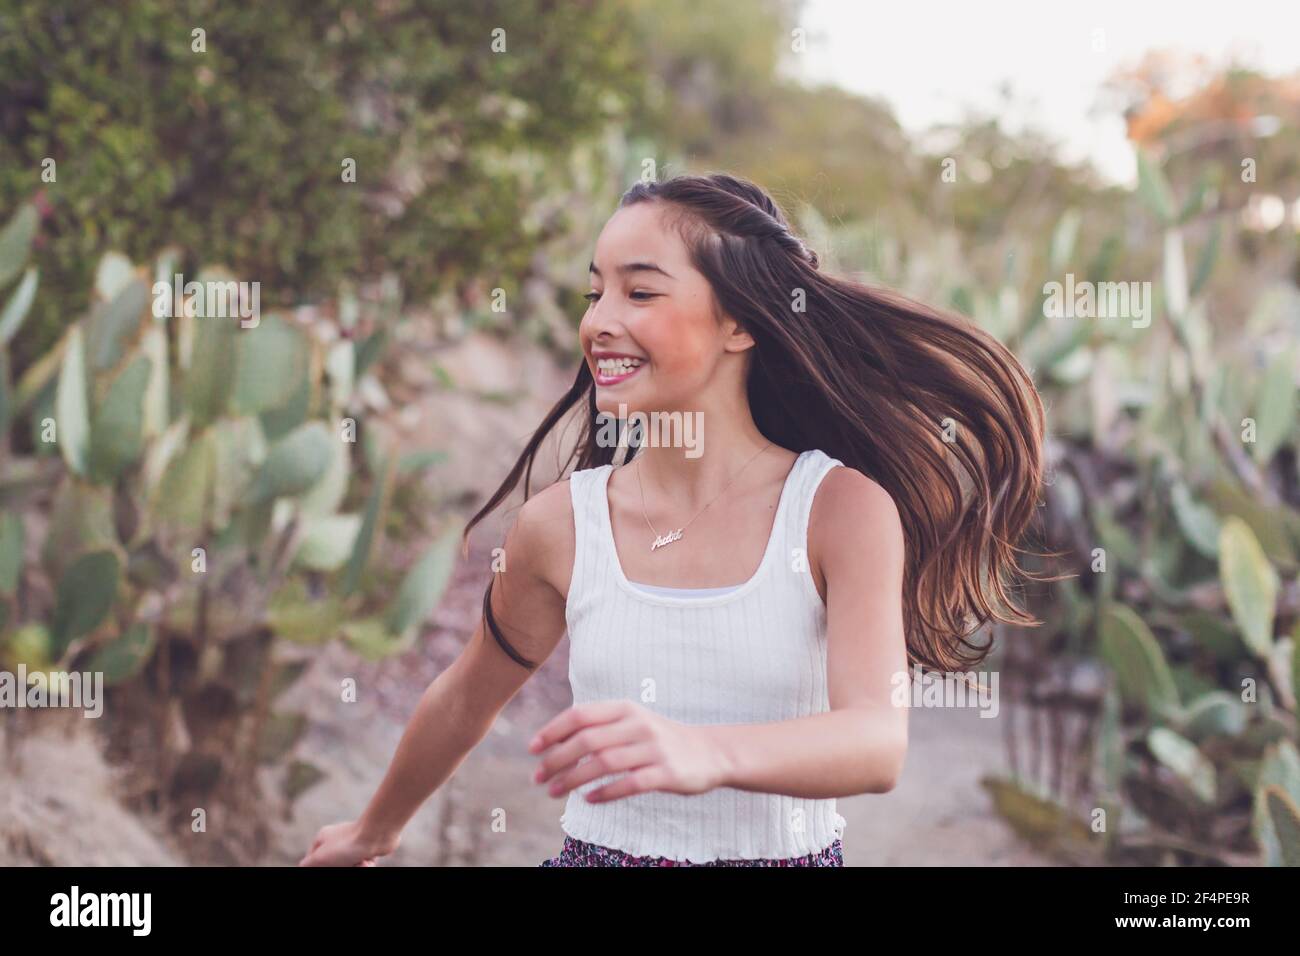 Misto razza ragazza che cammina su un percorso cactus con i suoi lunghi capelli volare. Foto Stock